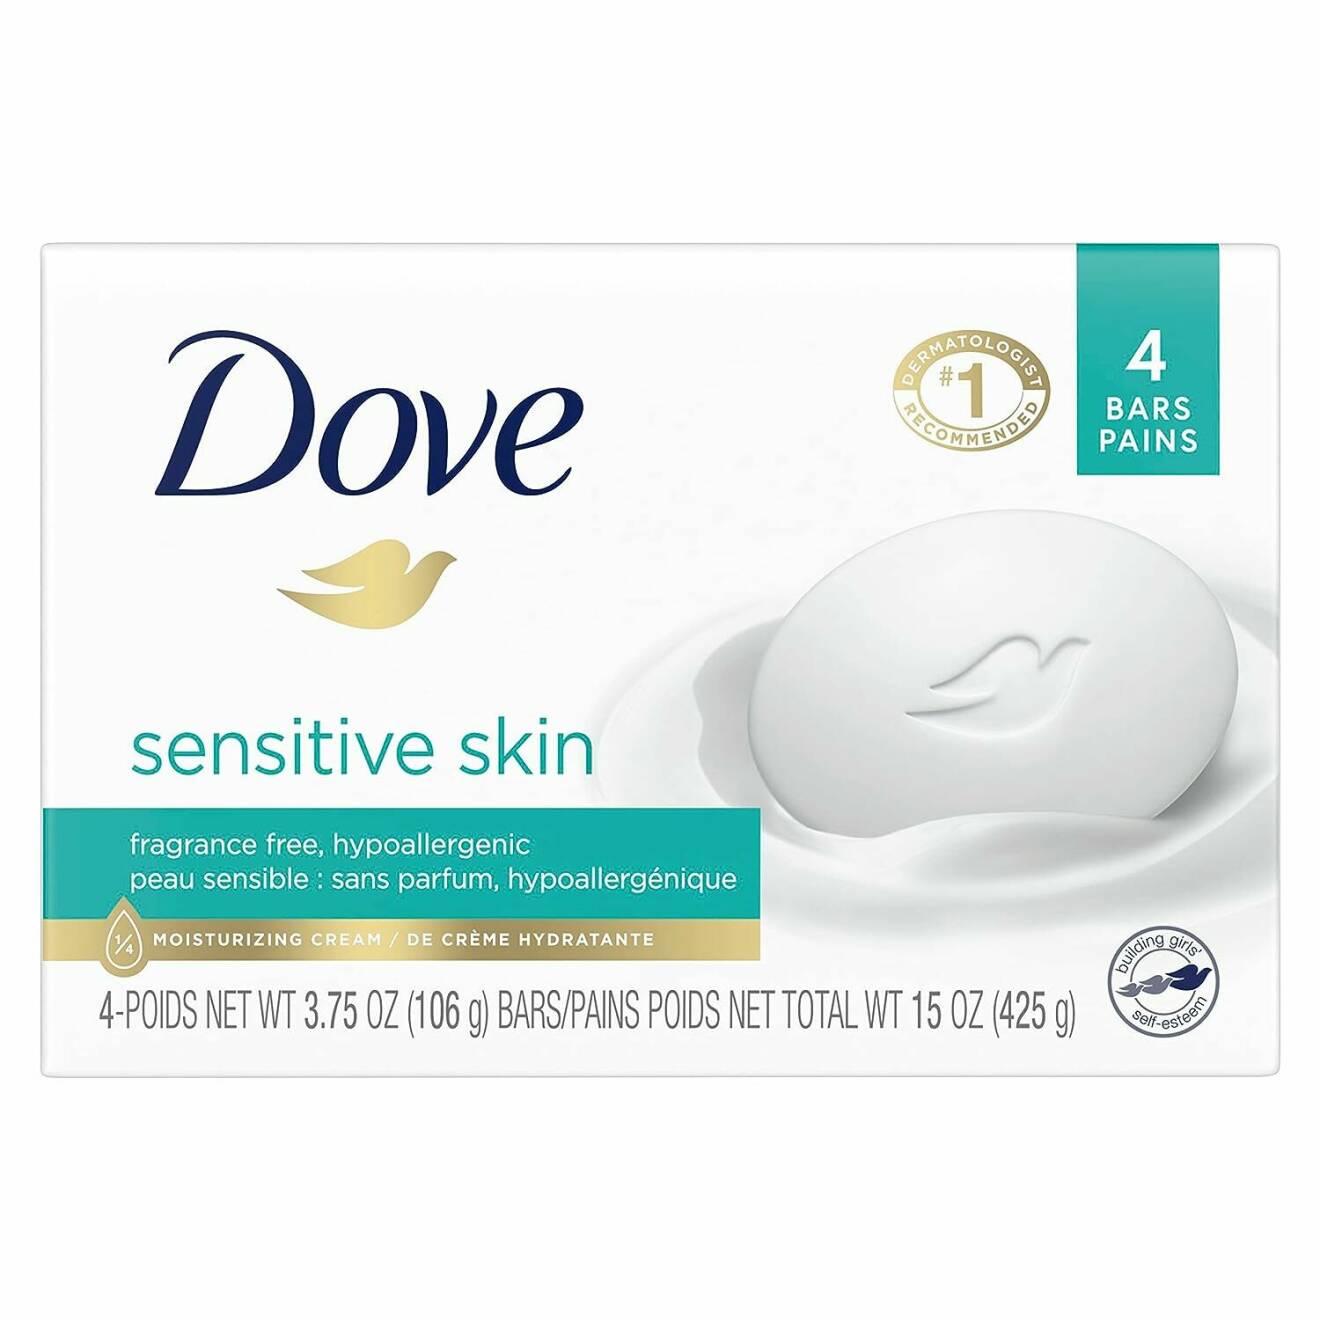 Dove Sensitive skin beauty bar.